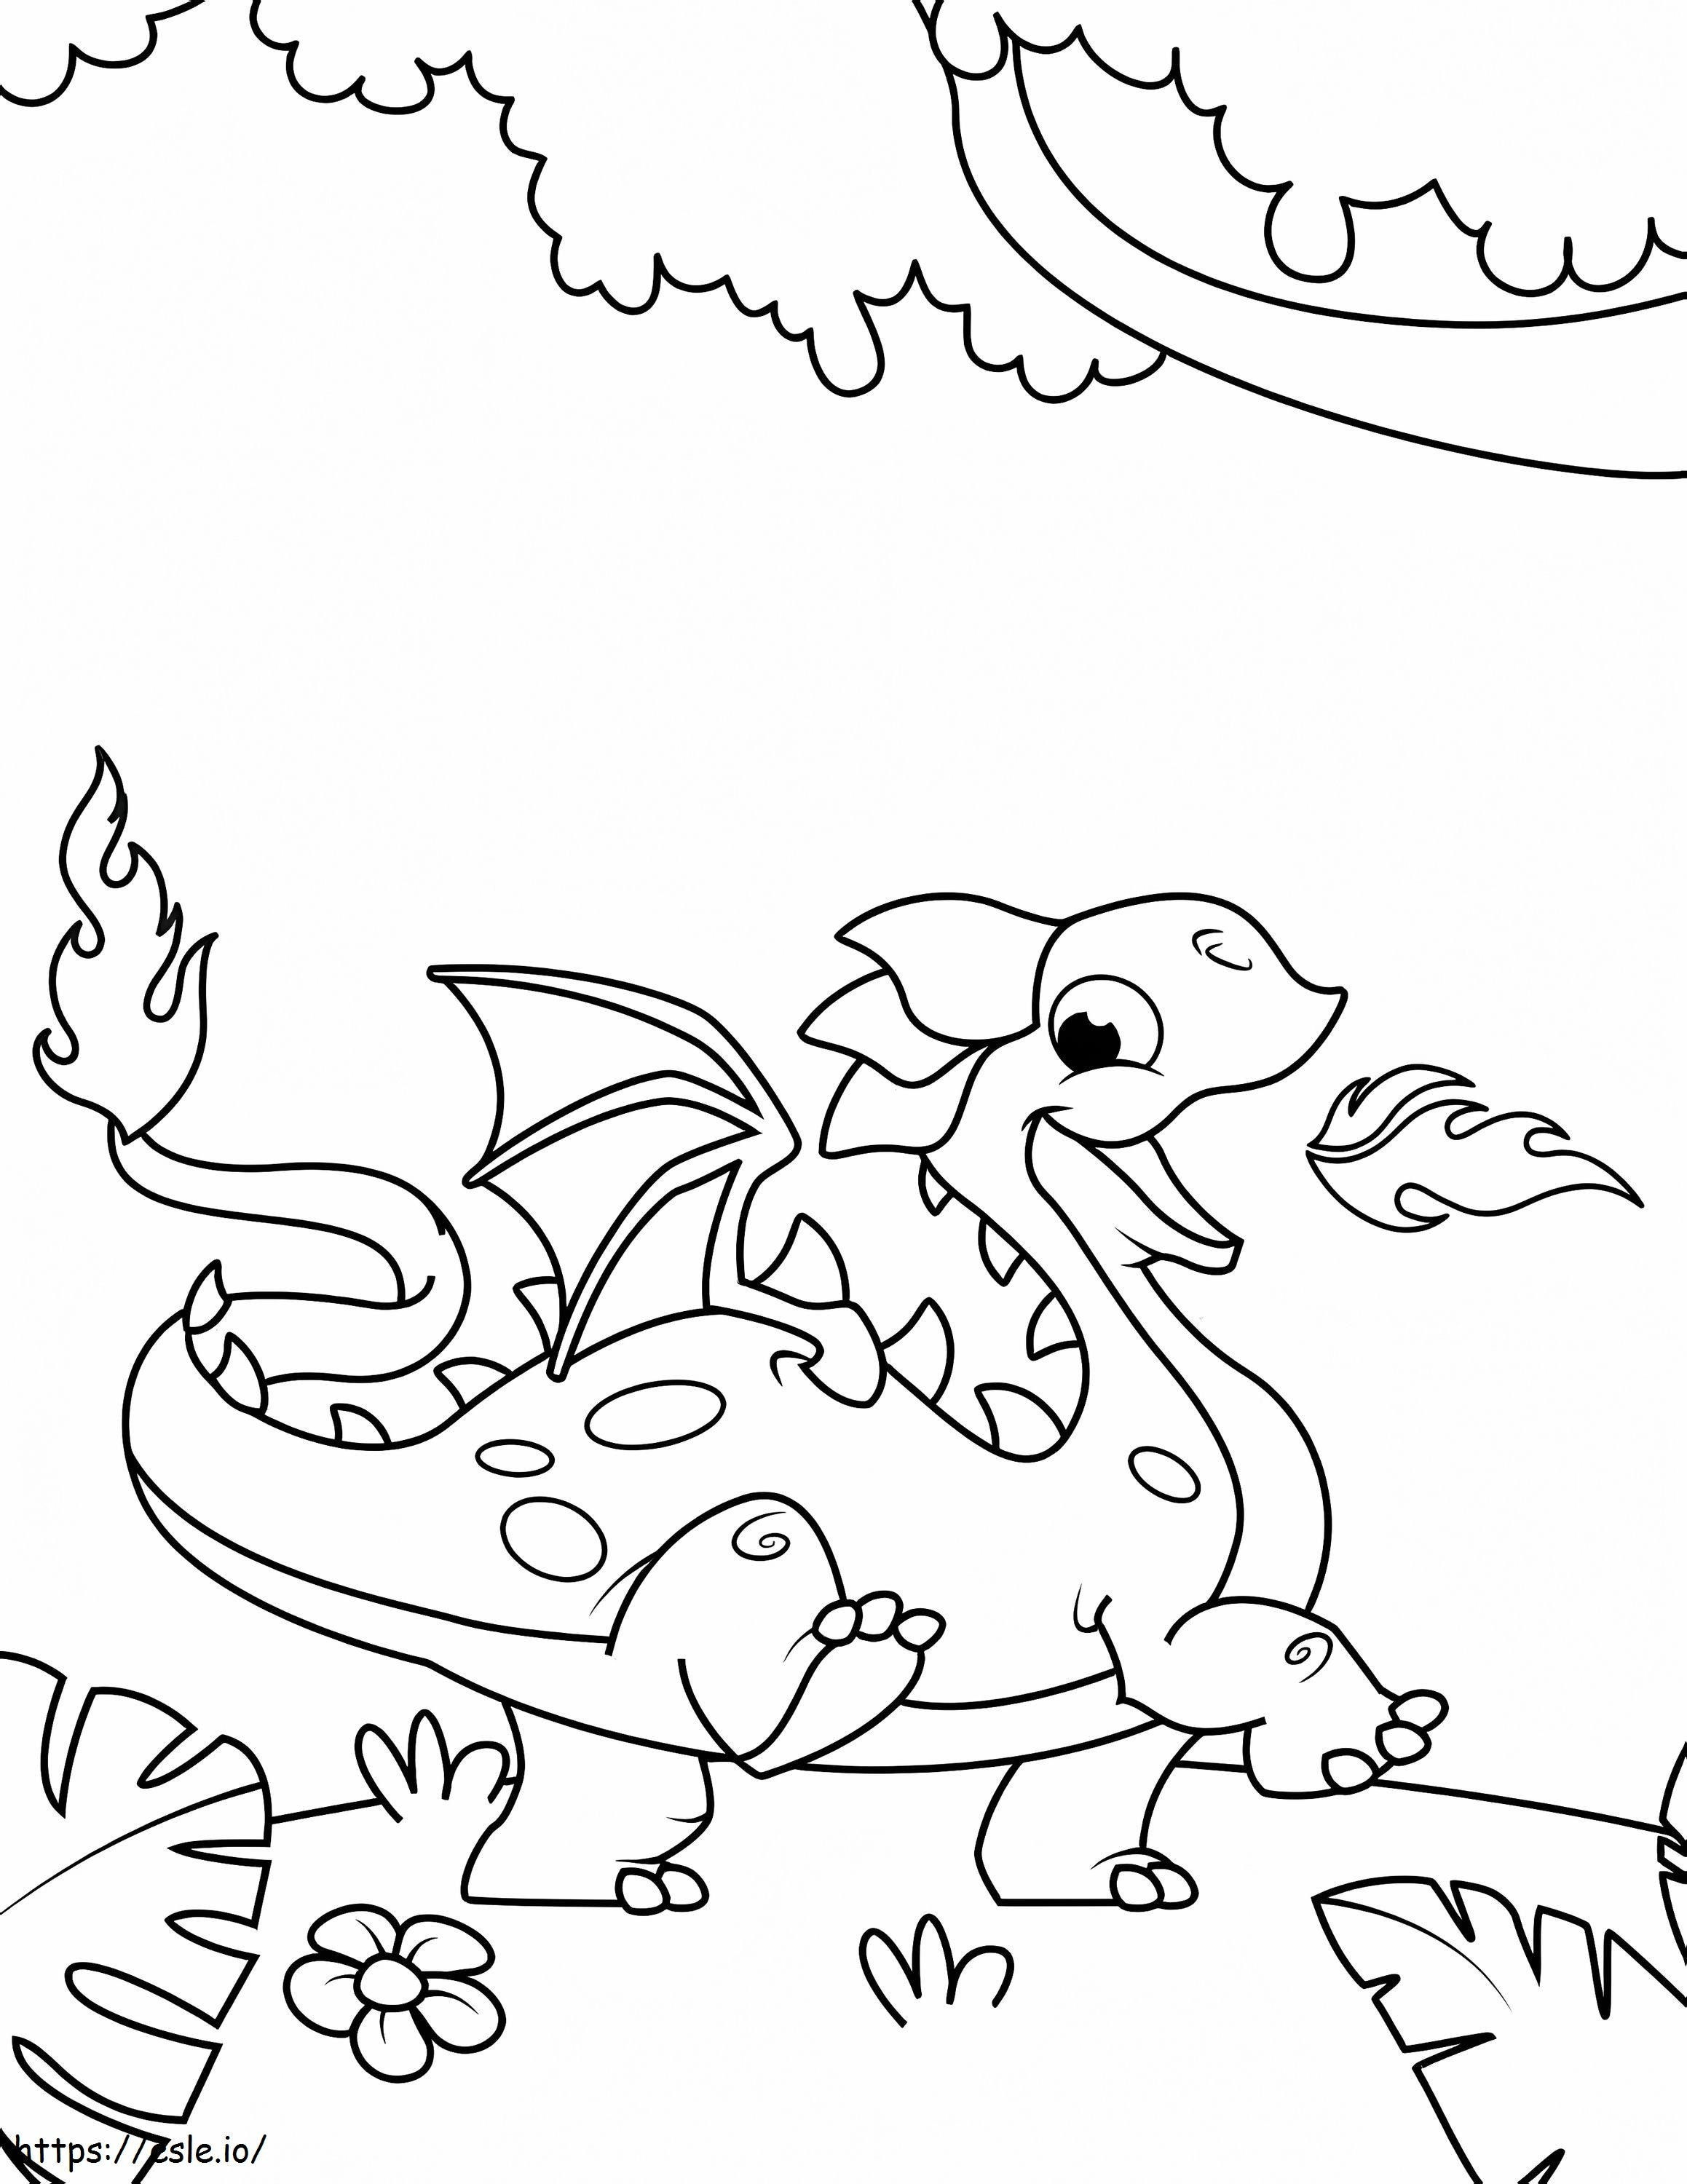 Coloriage Dragon Mignon à imprimer dessin